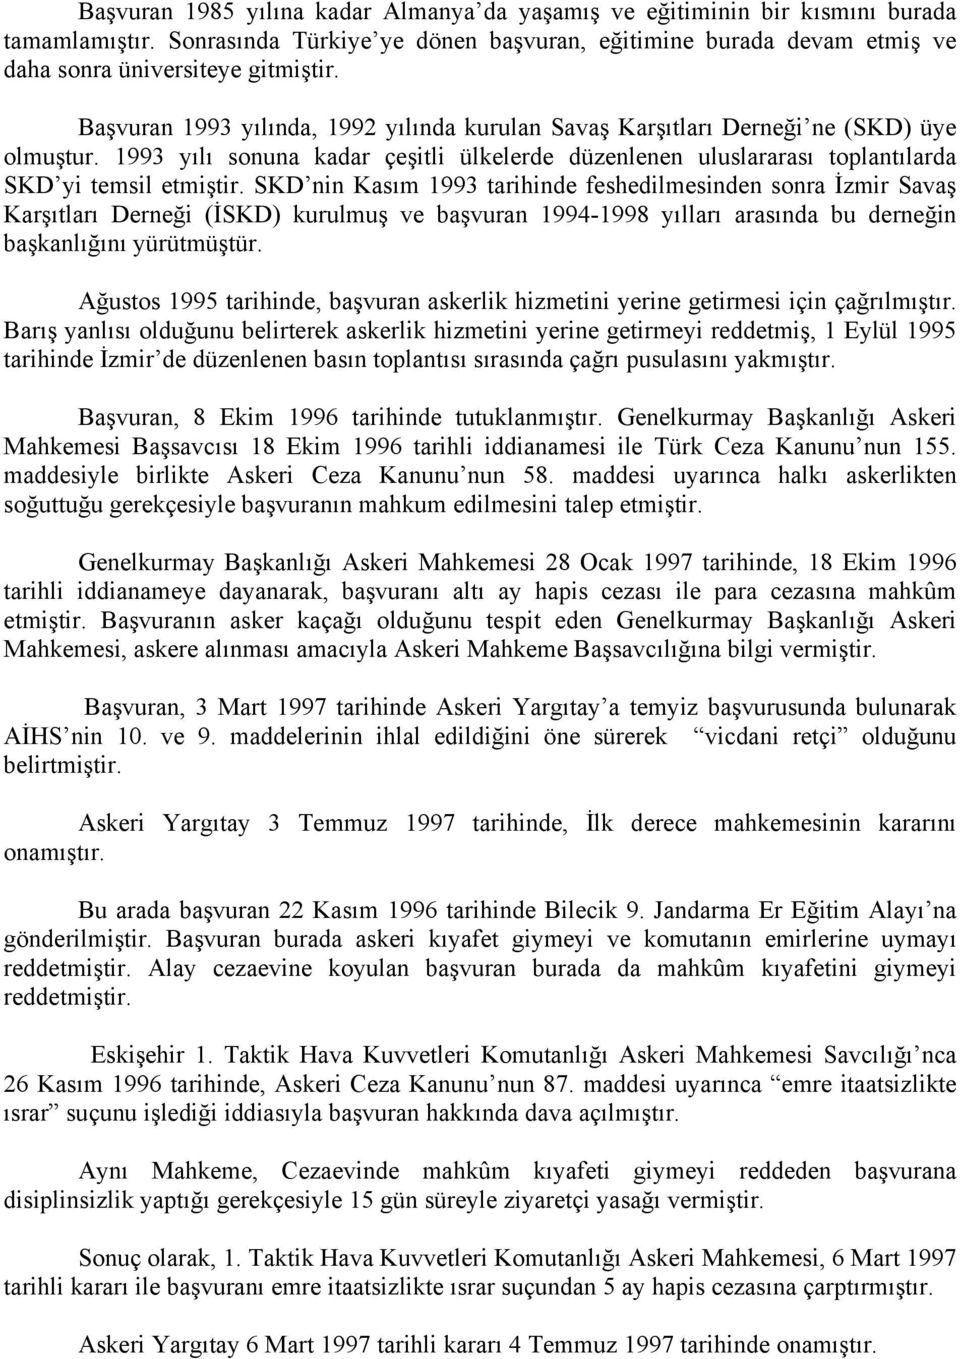 SKD nin Kasım 1993 tarihinde feshedilmesinden sonra İzmir Savaş Karşıtları Derneği (İSKD) kurulmuş ve başvuran 1994-1998 yılları arasında bu derneğin başkanlığını yürütmüştür.